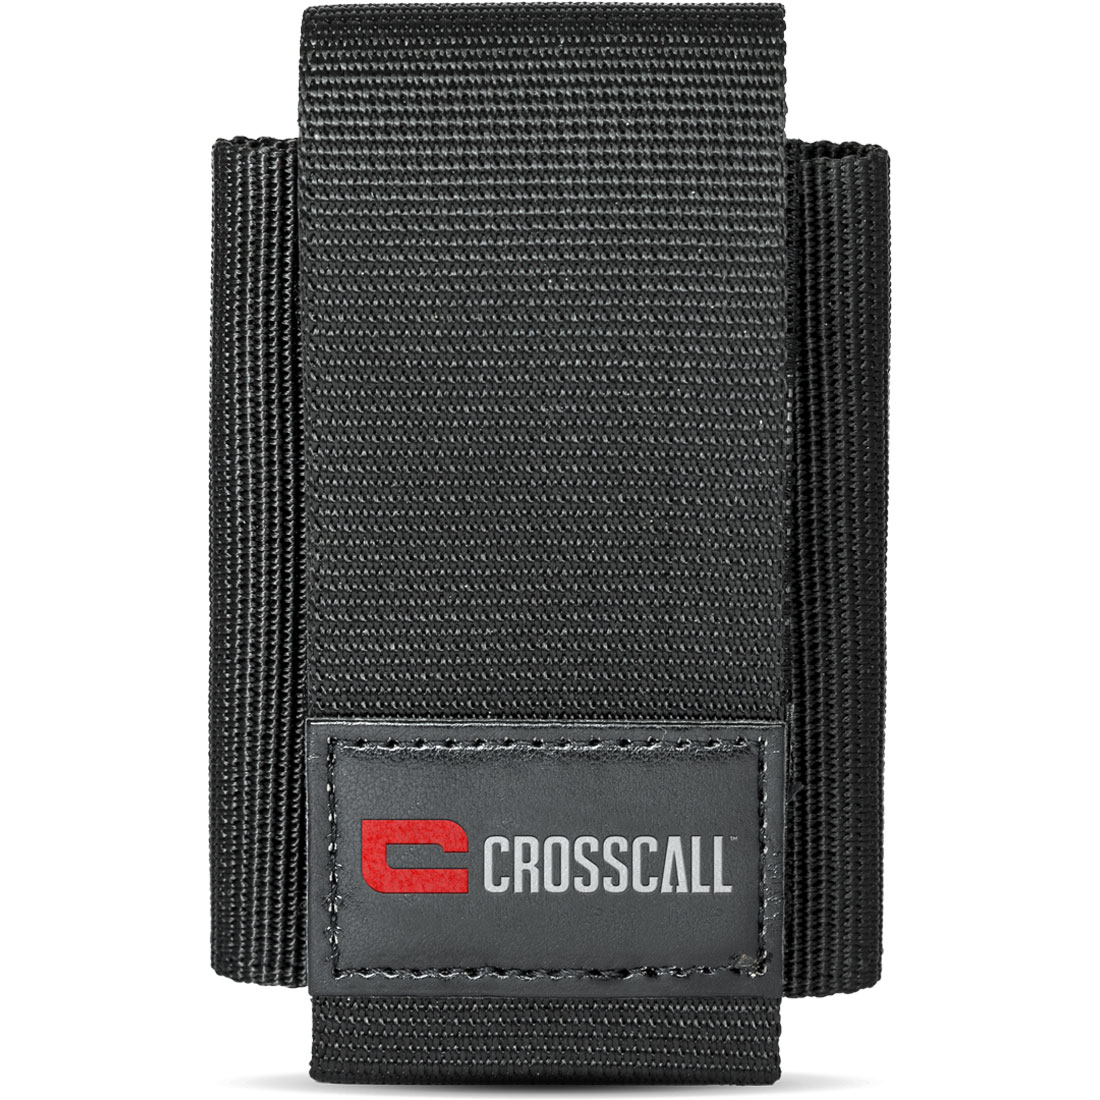 Crosscall Etui Universel Noir - Taille XL - Etui téléphone Crosscall sur LDLC.com